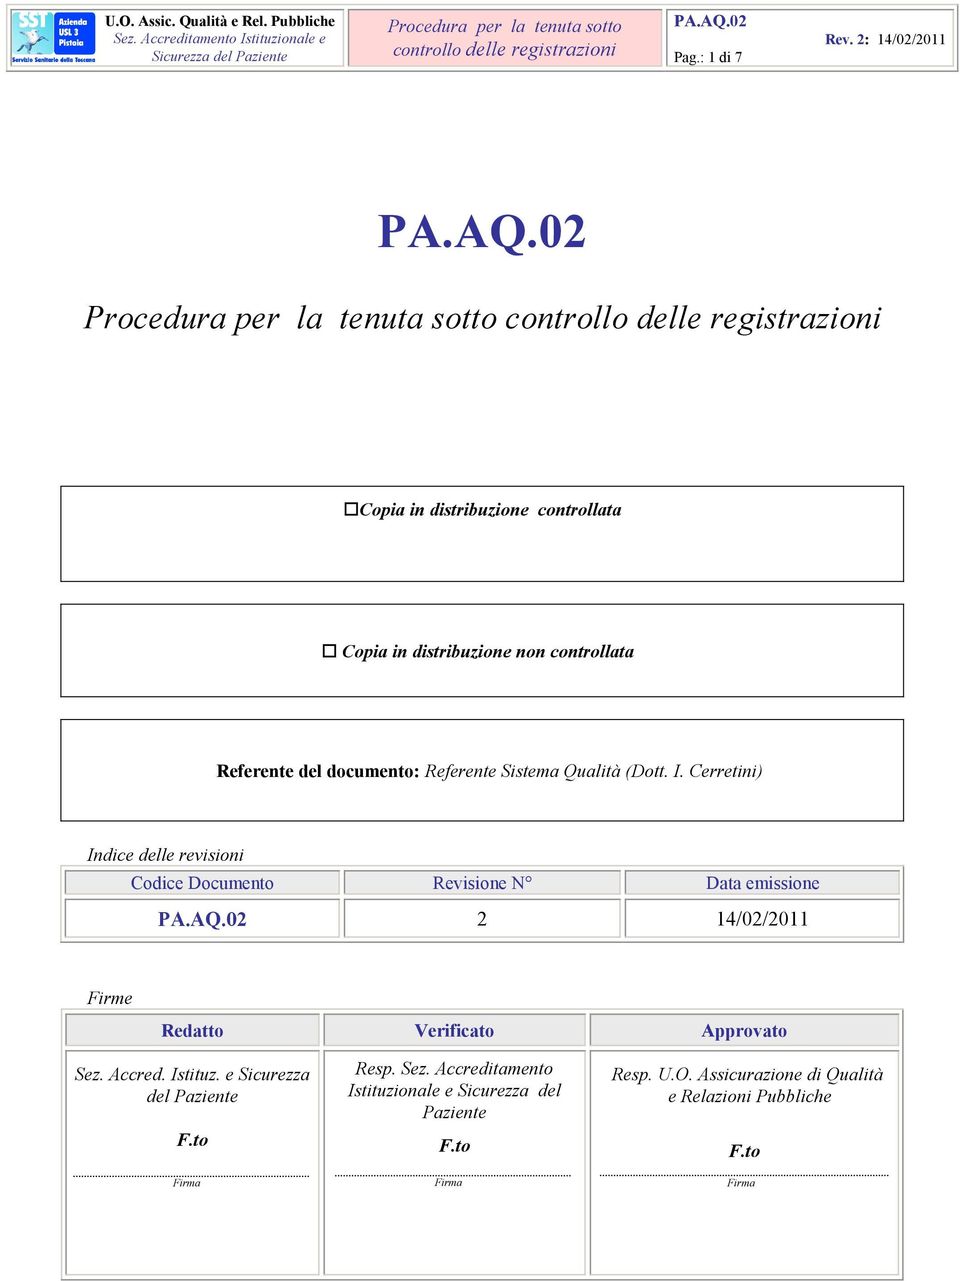 Cerretini) Indice delle revisioni Codice Documento Revisione N Data emissione 2 14/02/2011 Firme Redatto Verificato